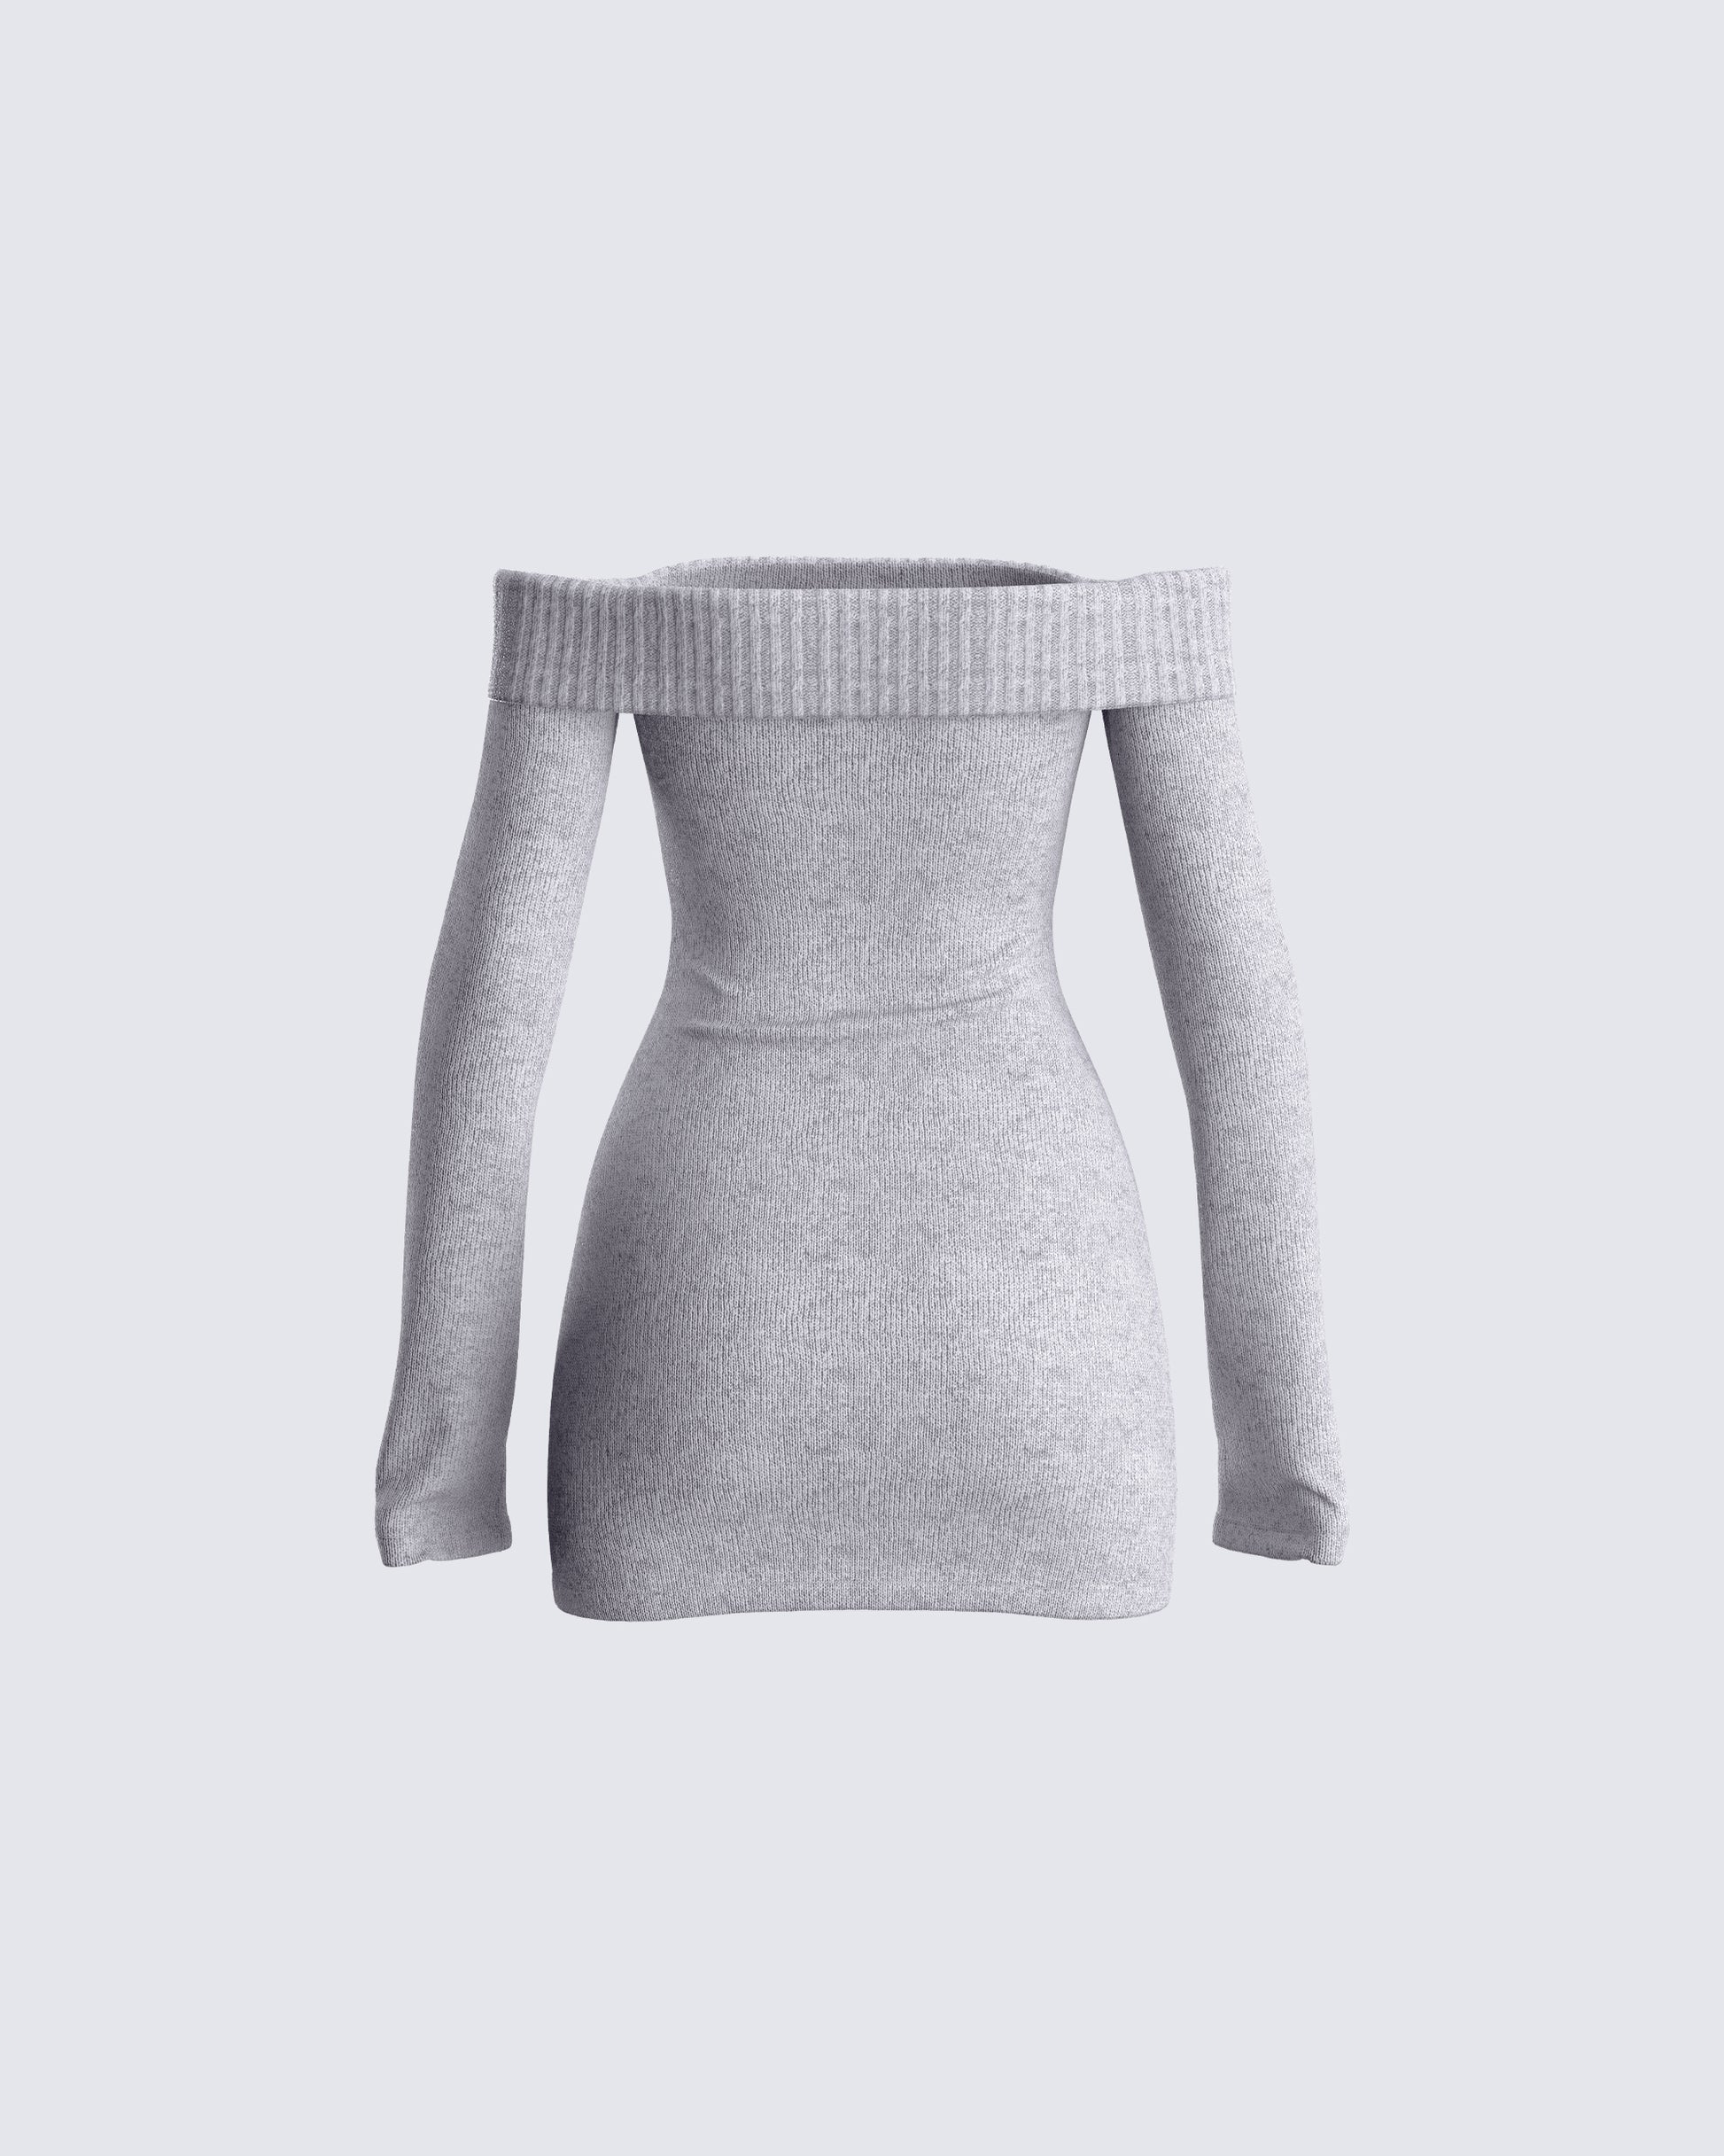 Abeni Grey Sweater Mini Dress – FINESSE